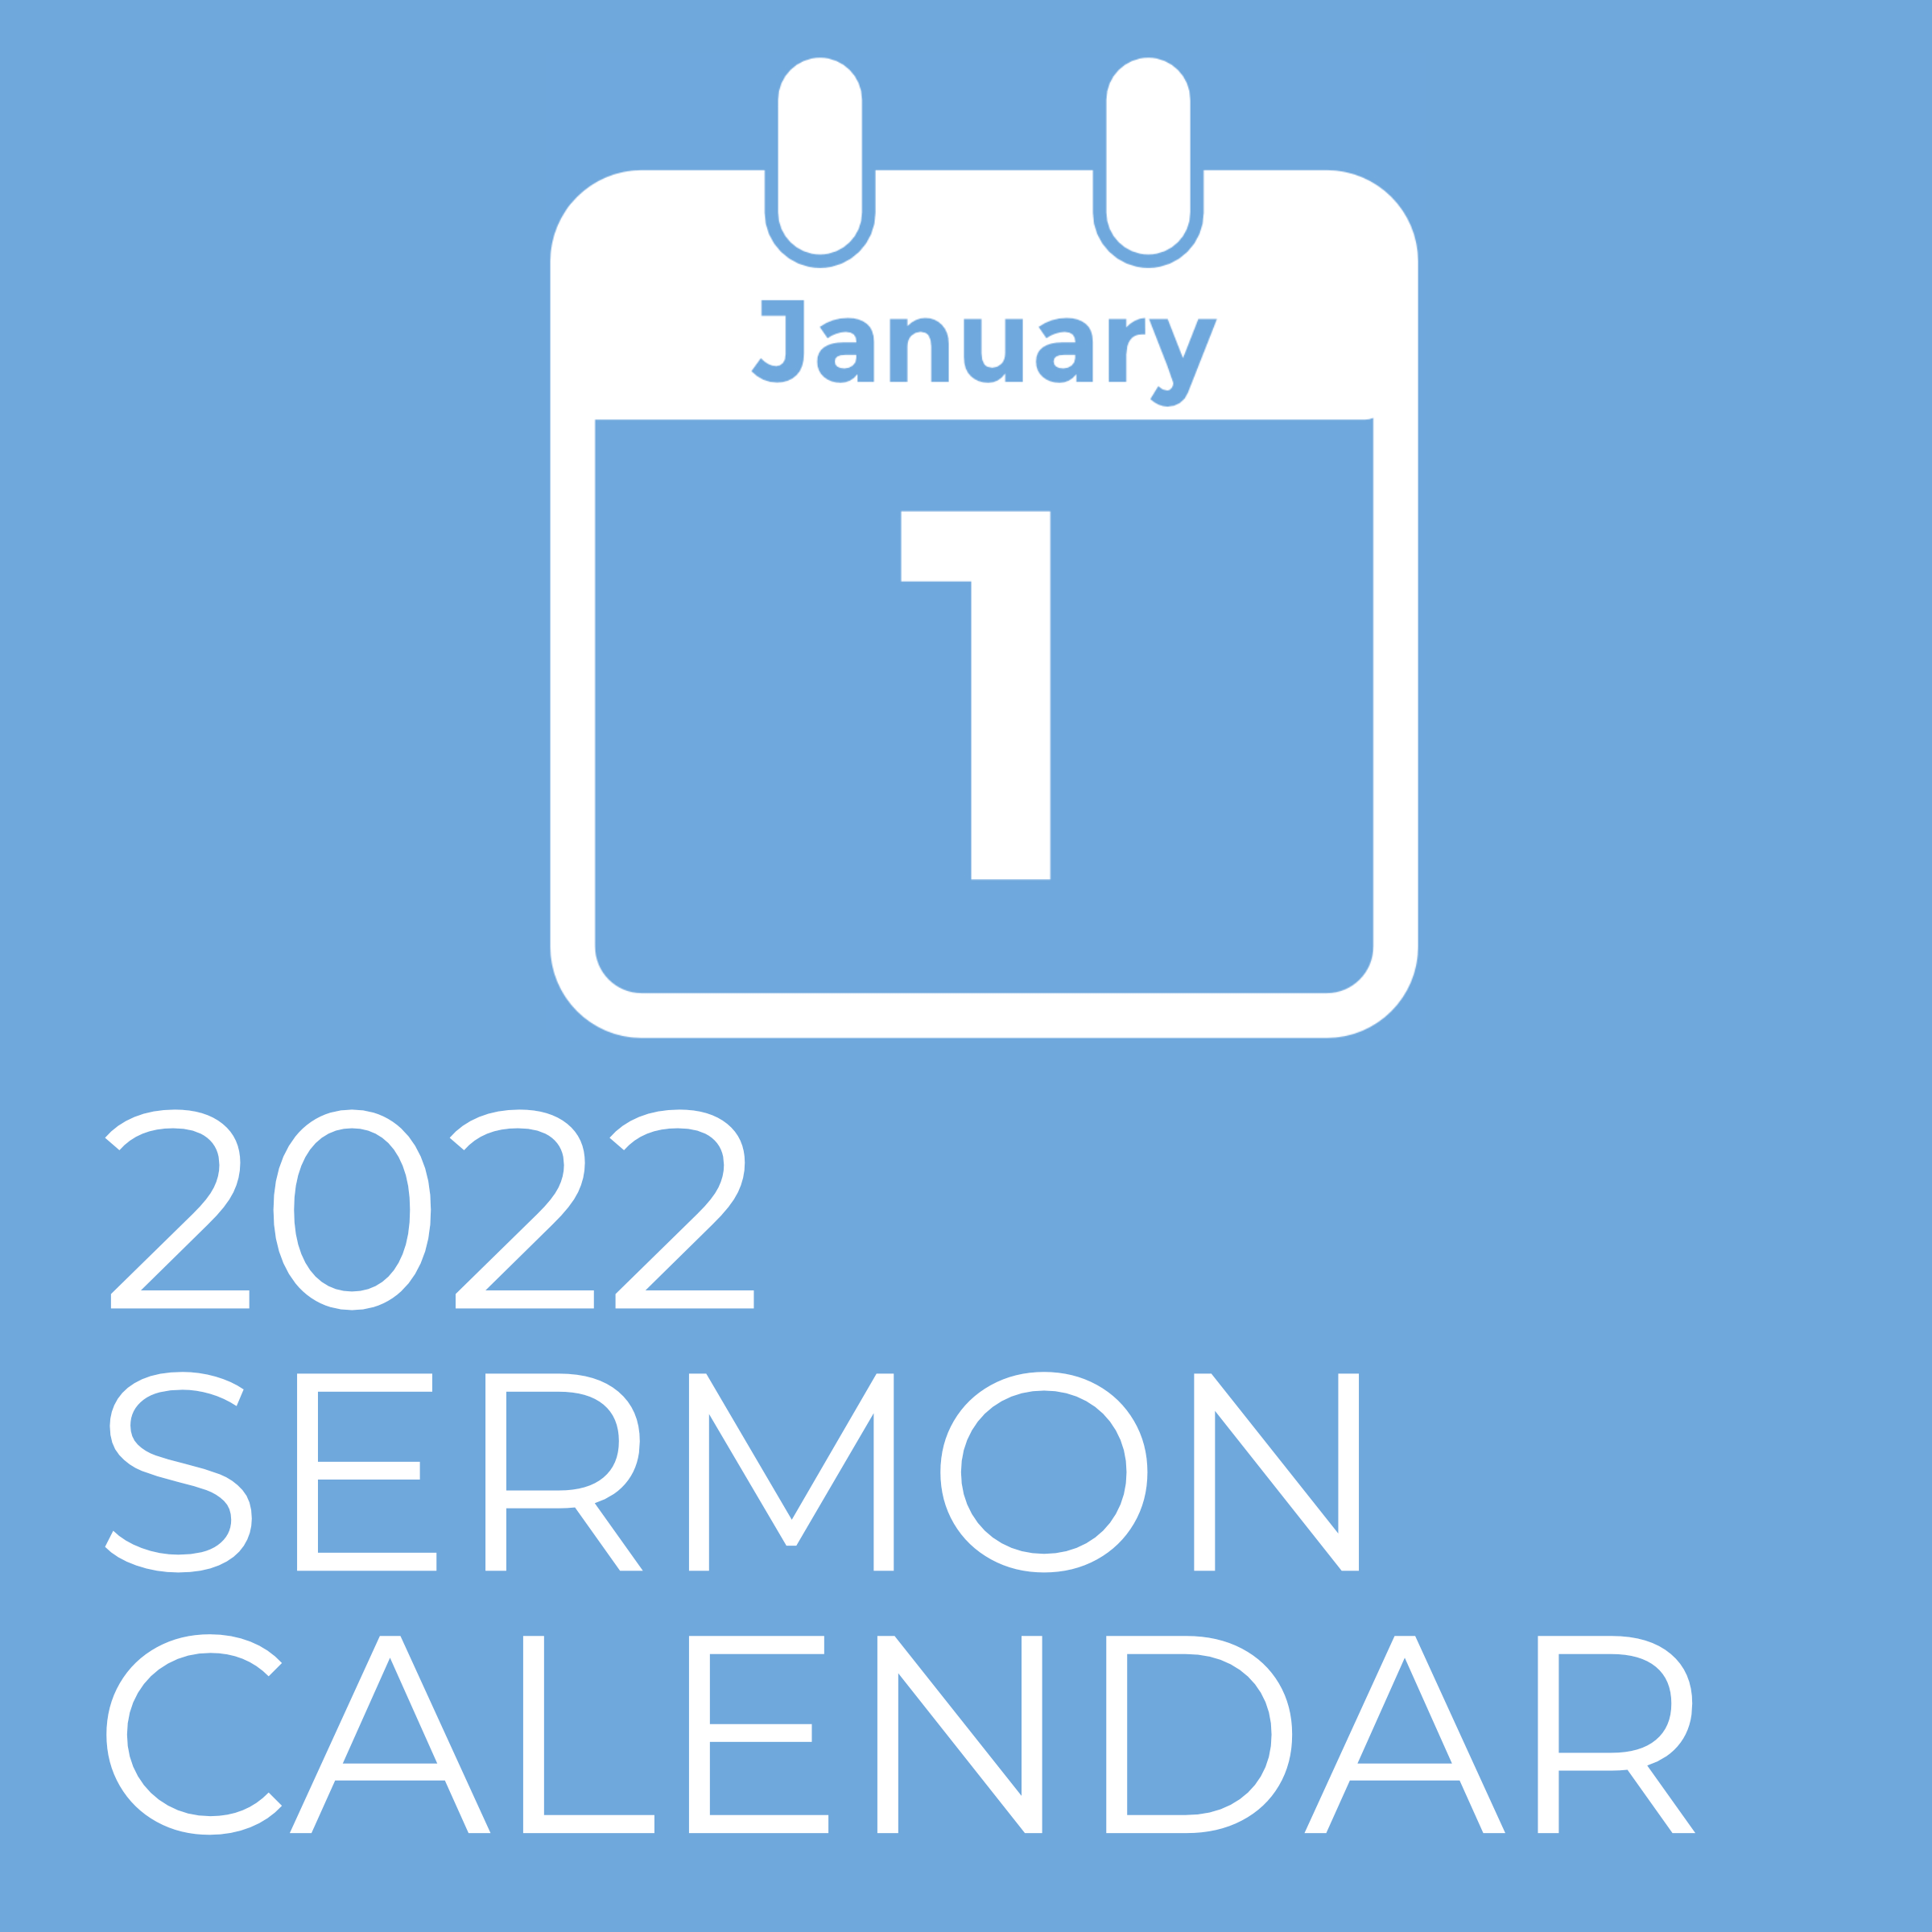 Preaching Calendar Template 2022 2022 Sermon Calendar - Pro Preacher